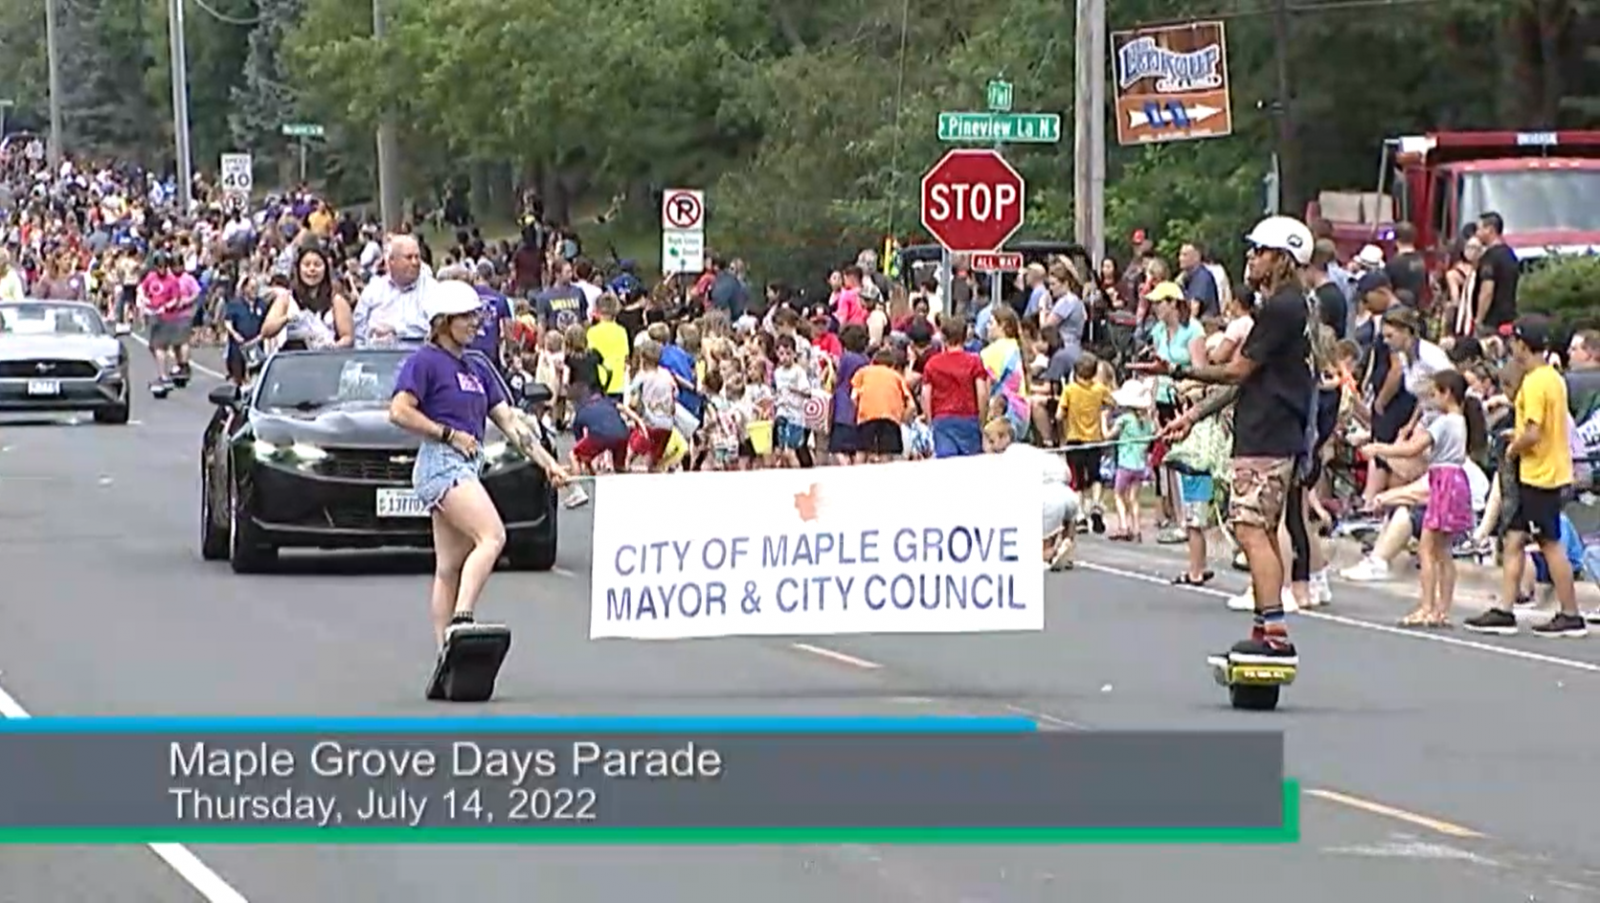 2022 Maple Grove Days Parade CCX Media